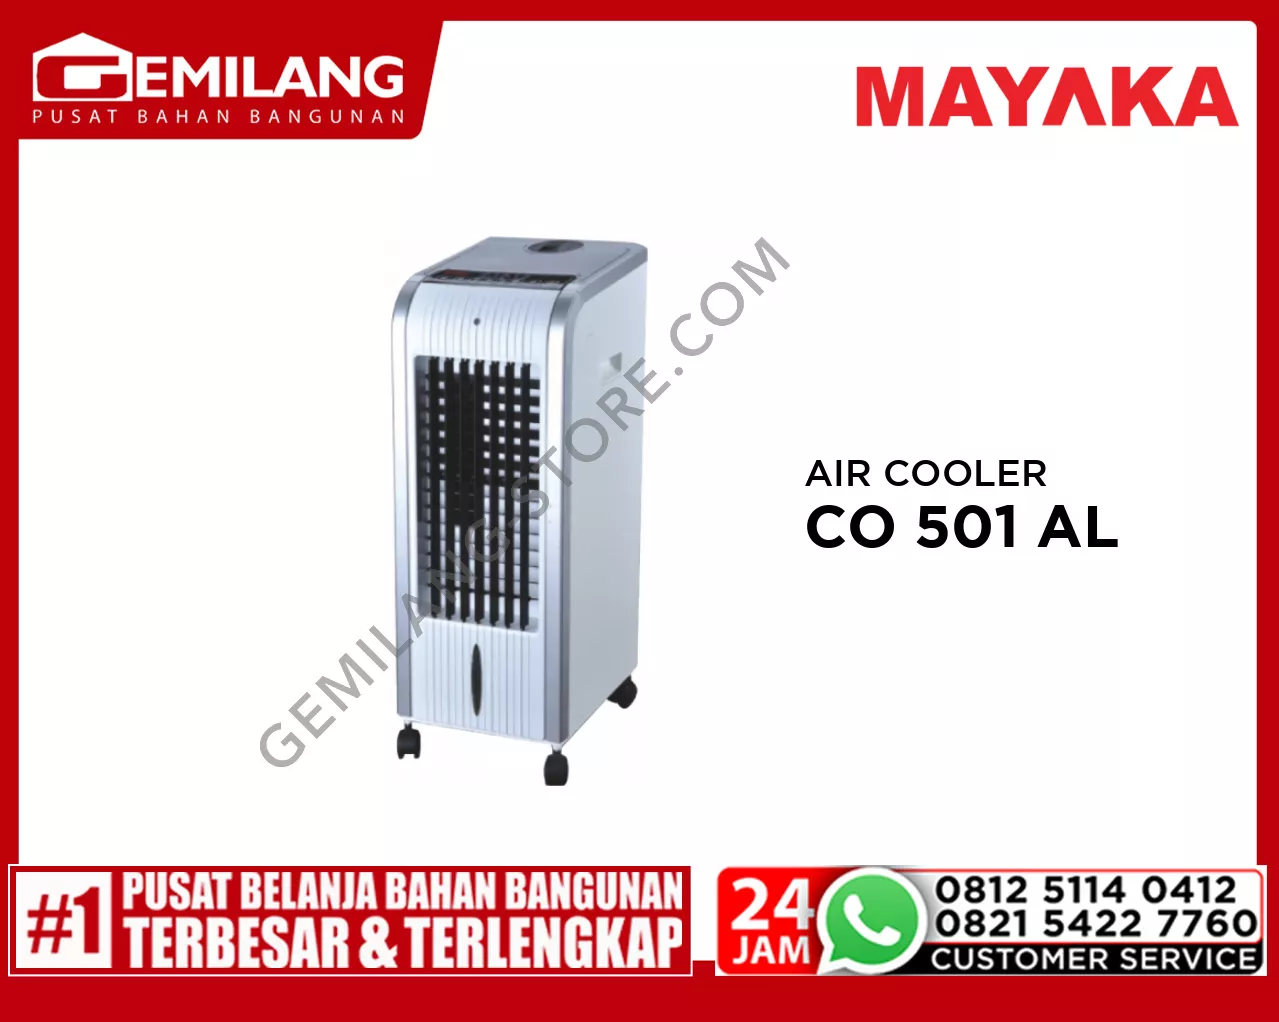 MAYAKA AIR COOLER CO 501 AL